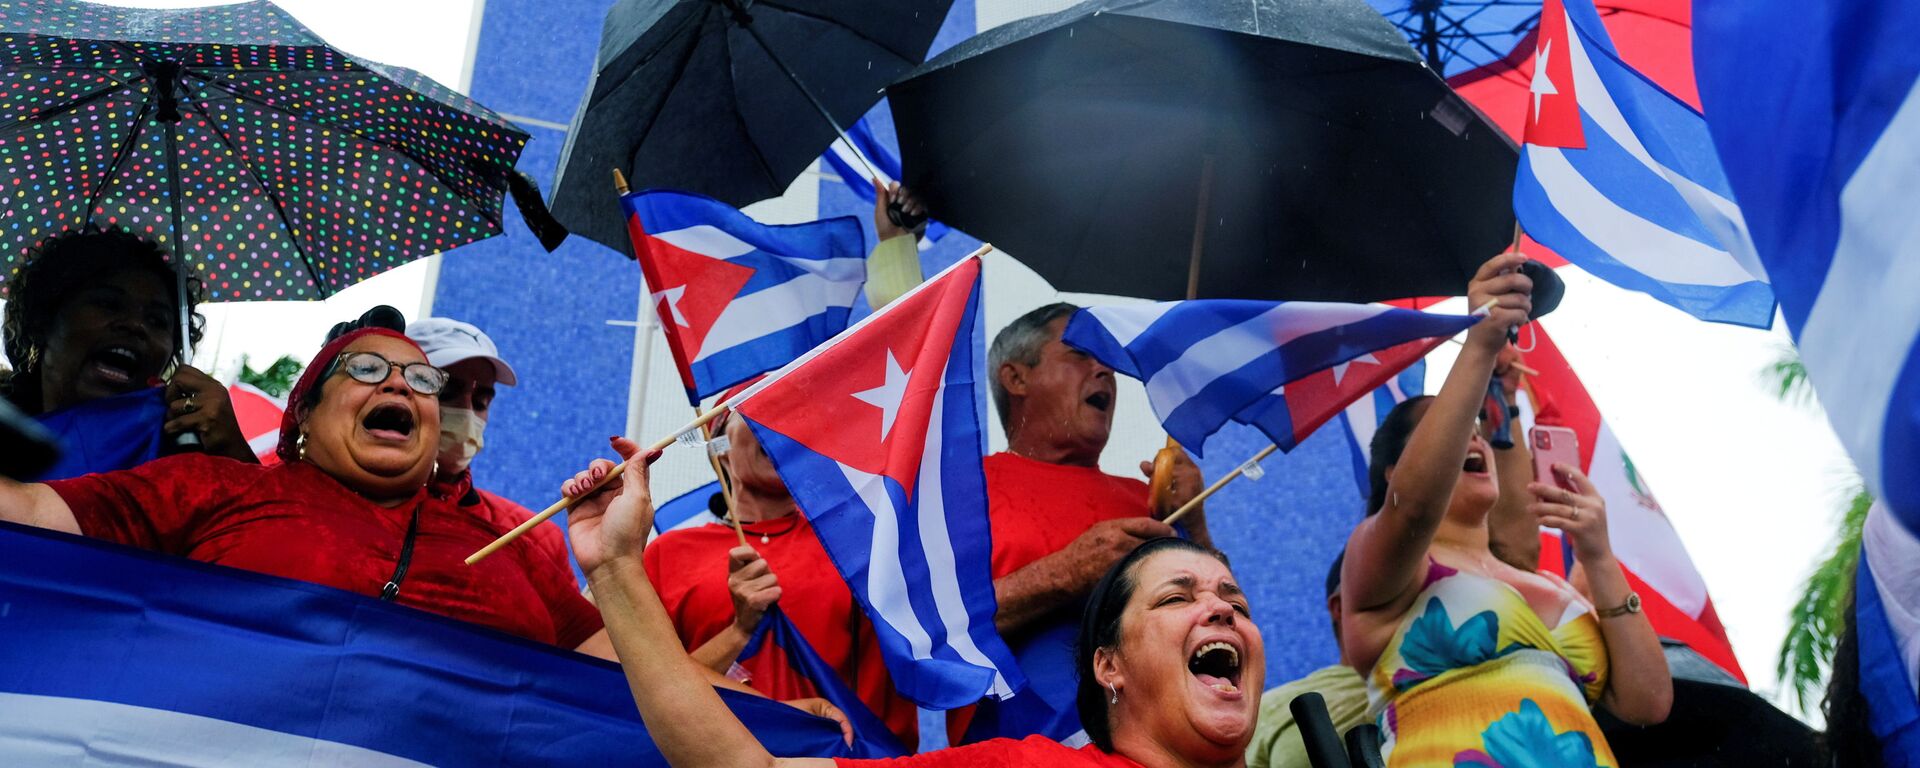 Emigrantes no bairro Little Havana reagem aos protestos em Cuba contra a crise econômica no país, Miami, EUA, 13 de julho de 2021 - Sputnik Brasil, 1920, 04.08.2021